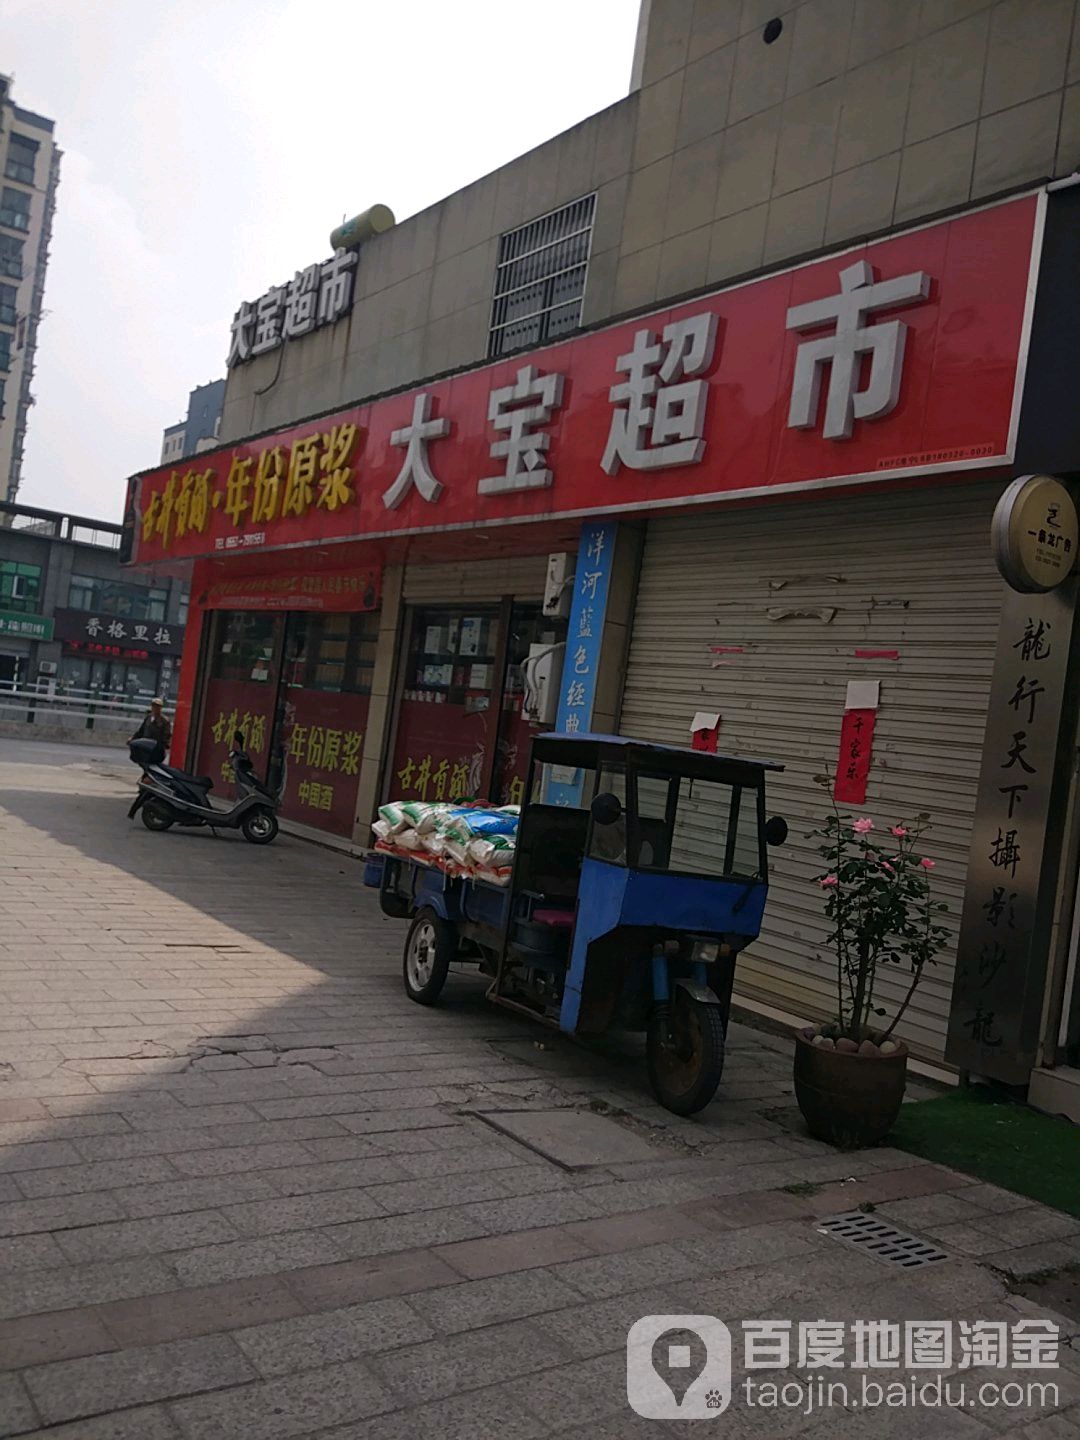 大宝超市(渡江大道中)_芜湖_百度地图